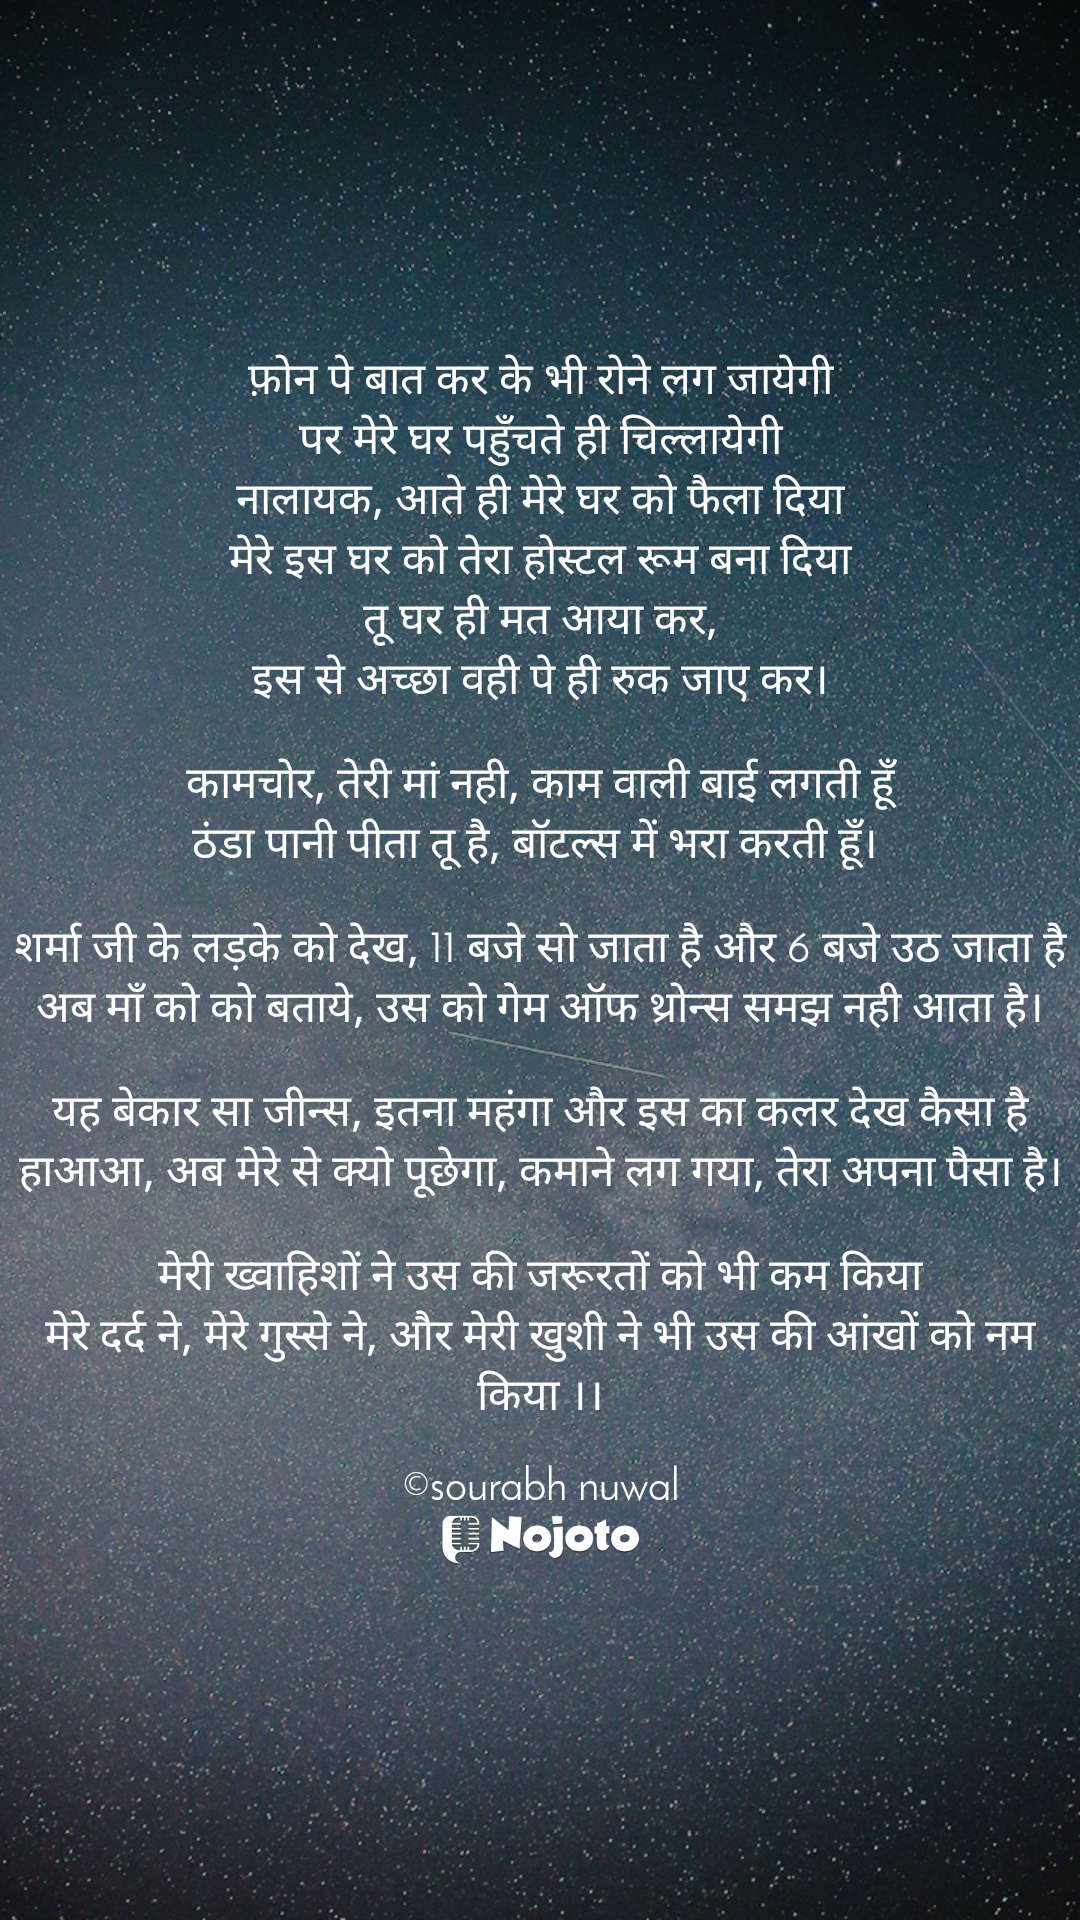 #motherDay #hindi_poetry 
#shootingstars